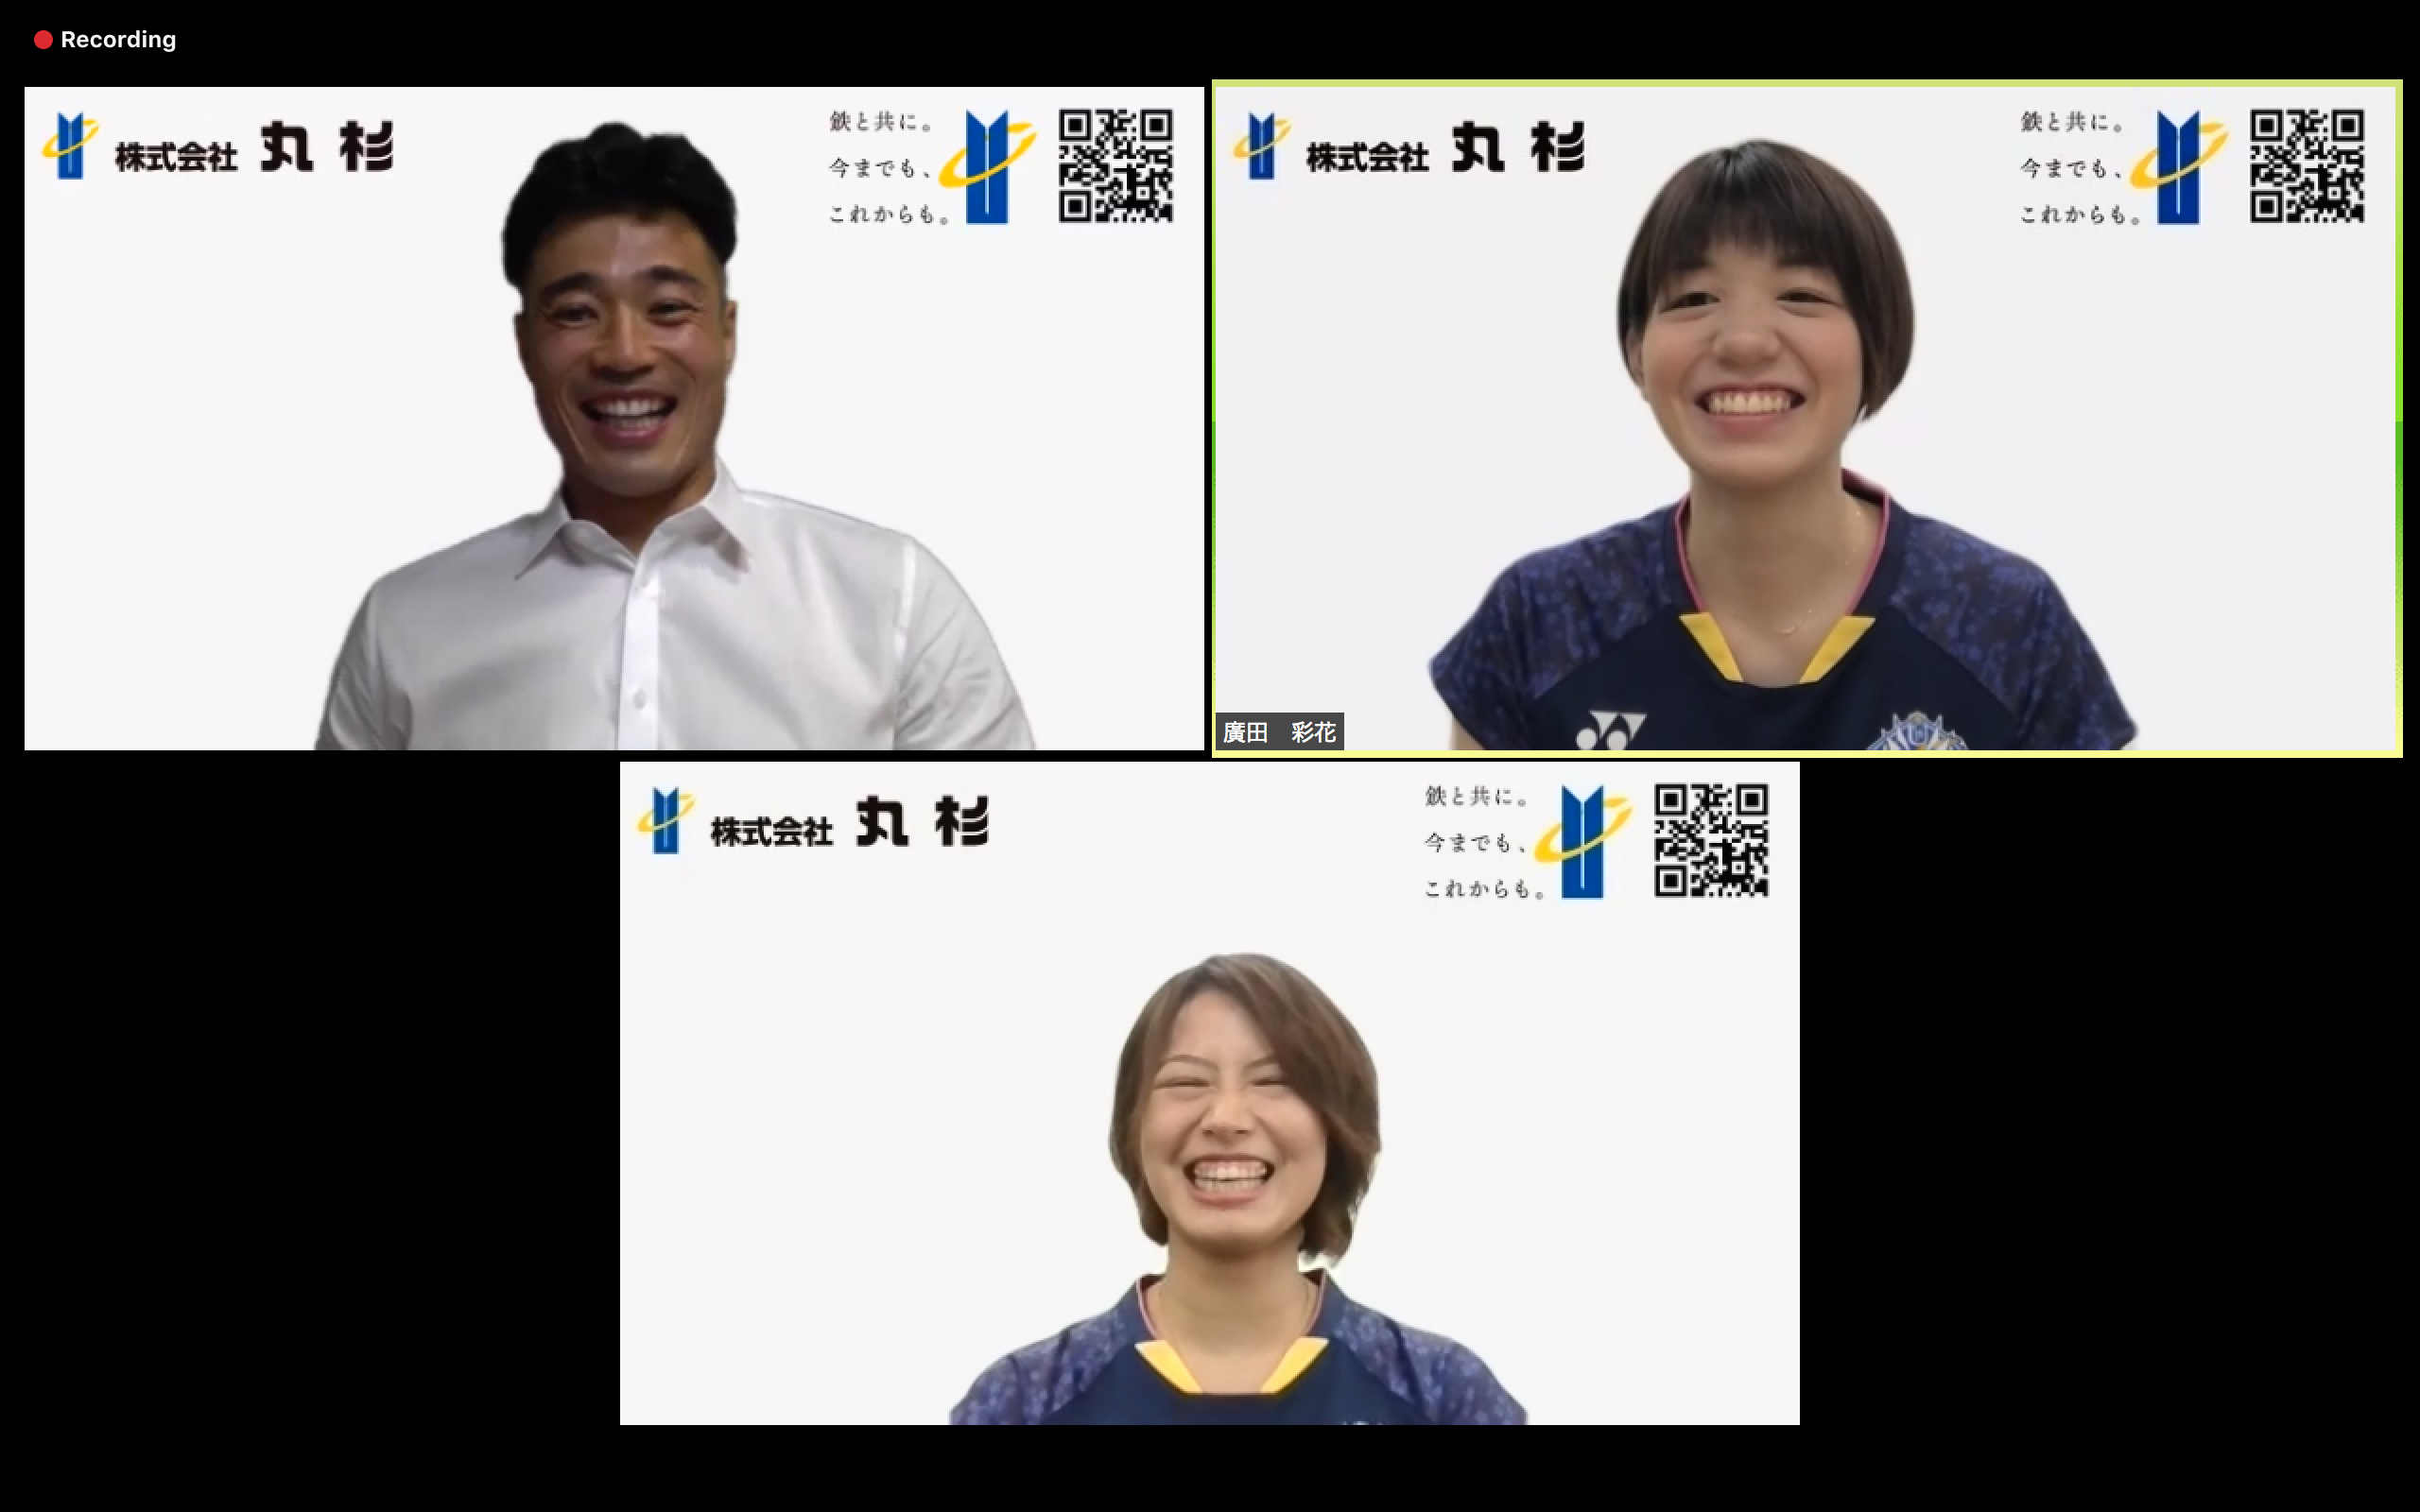 山田章仁さん（左上）の軽快な司会に笑いが起きる場面も